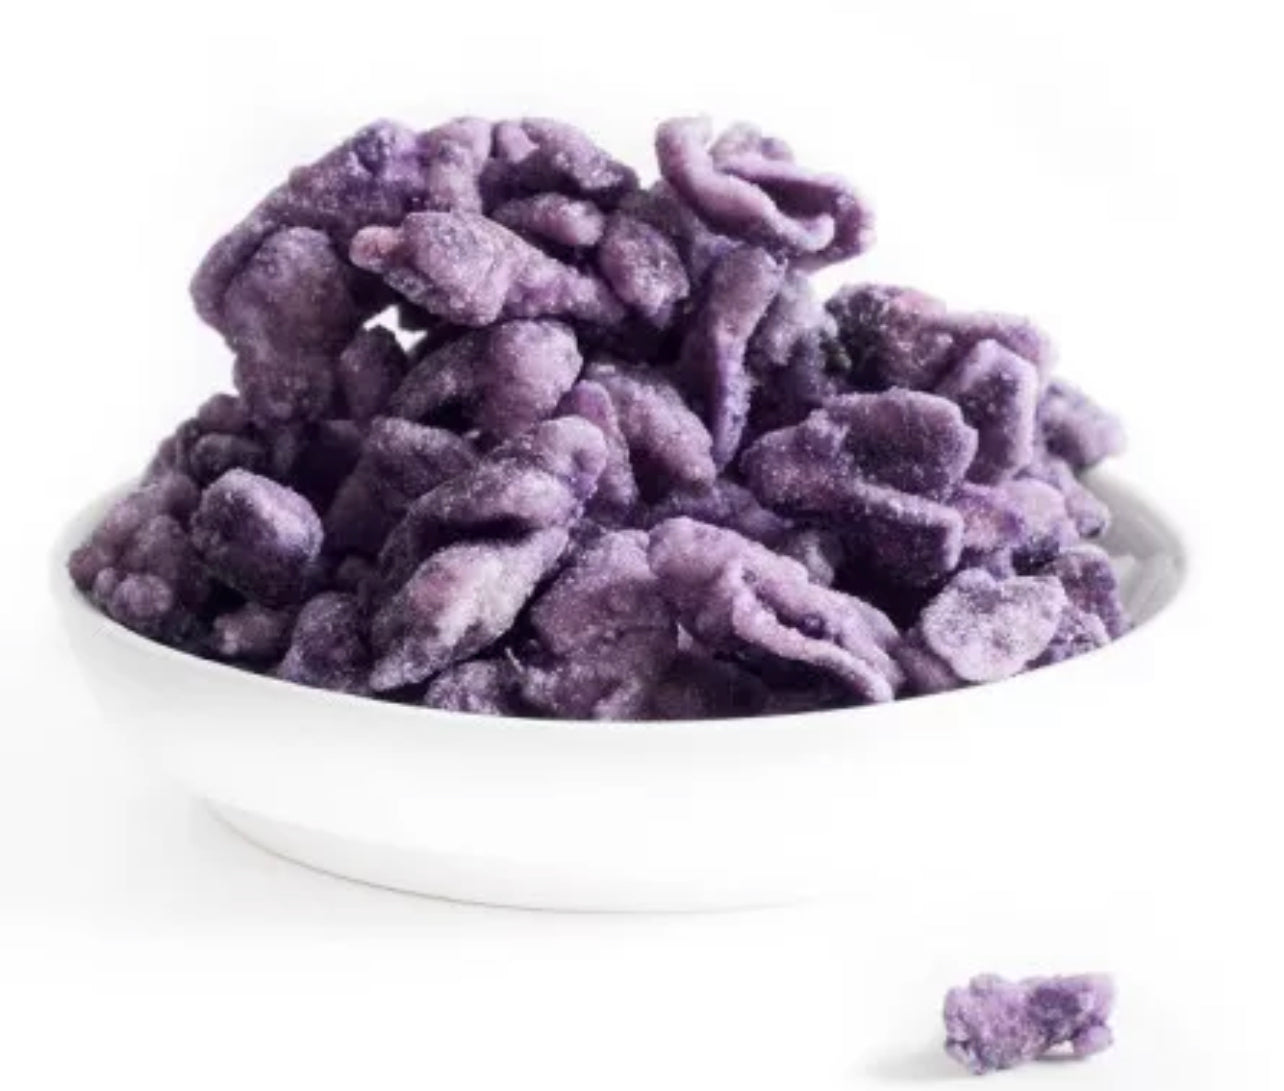 Flores de violeta enteras cristalizadas - 300g